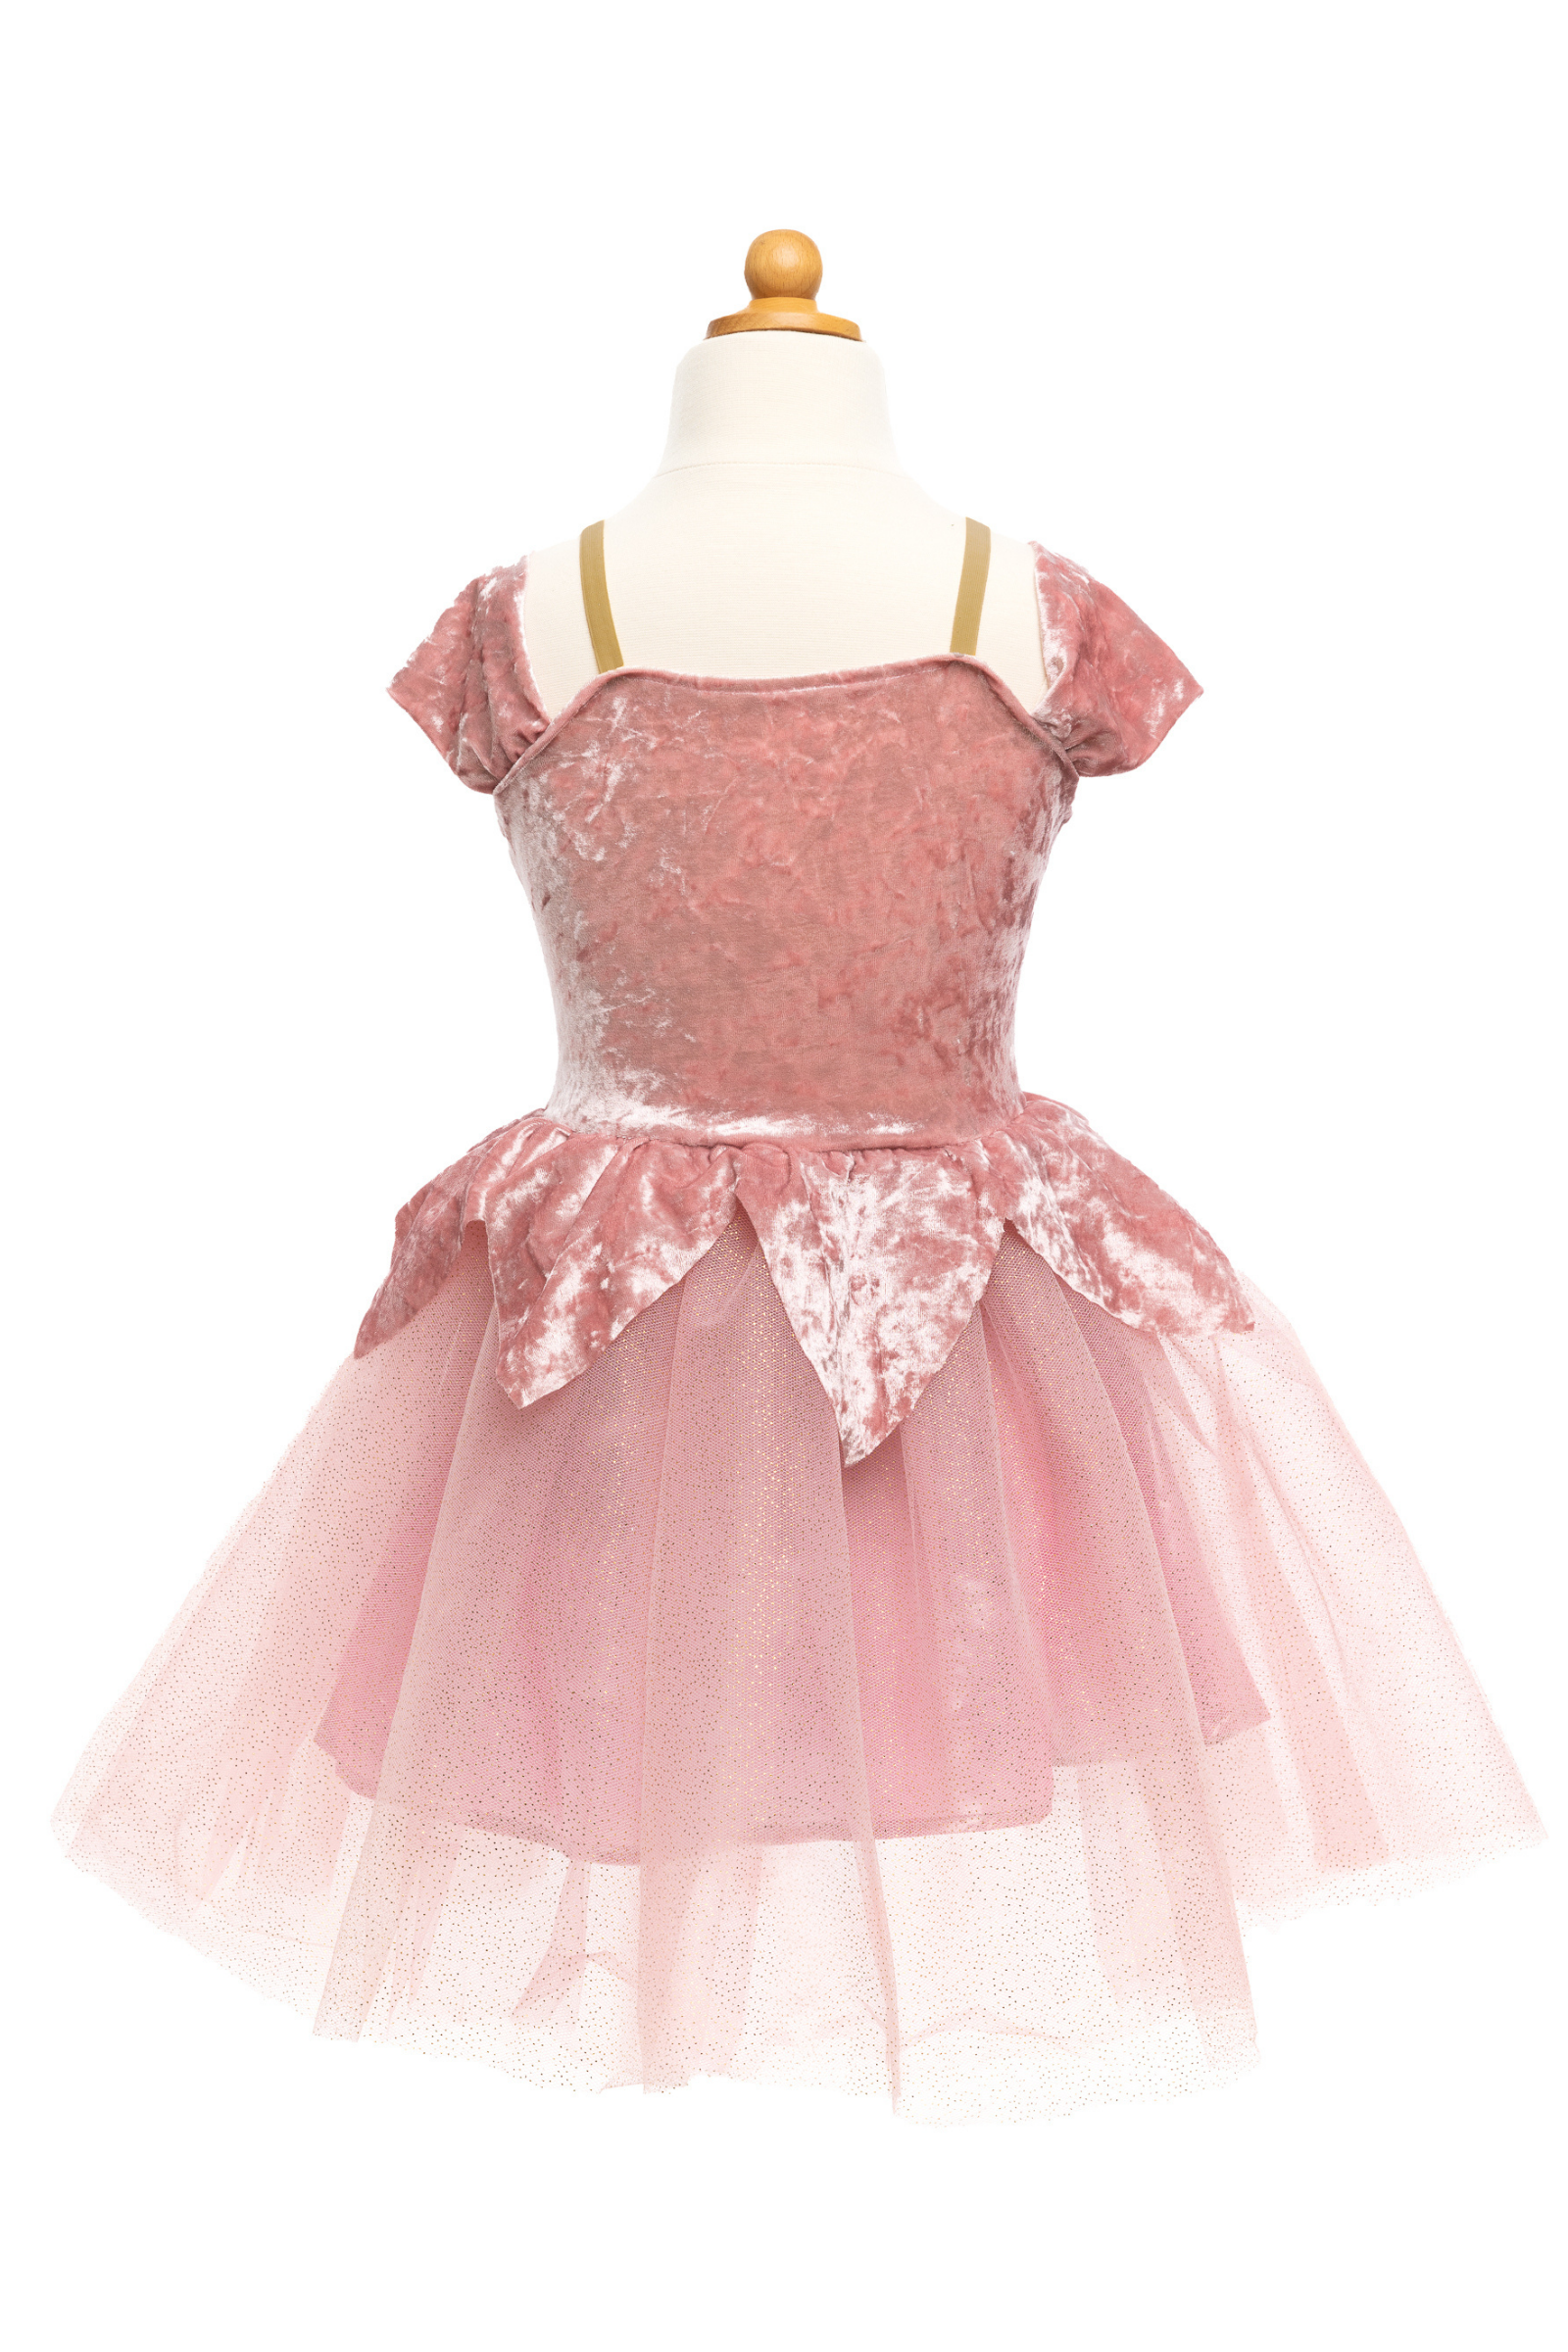 Dusty Rose Holiday Ballerina Dress